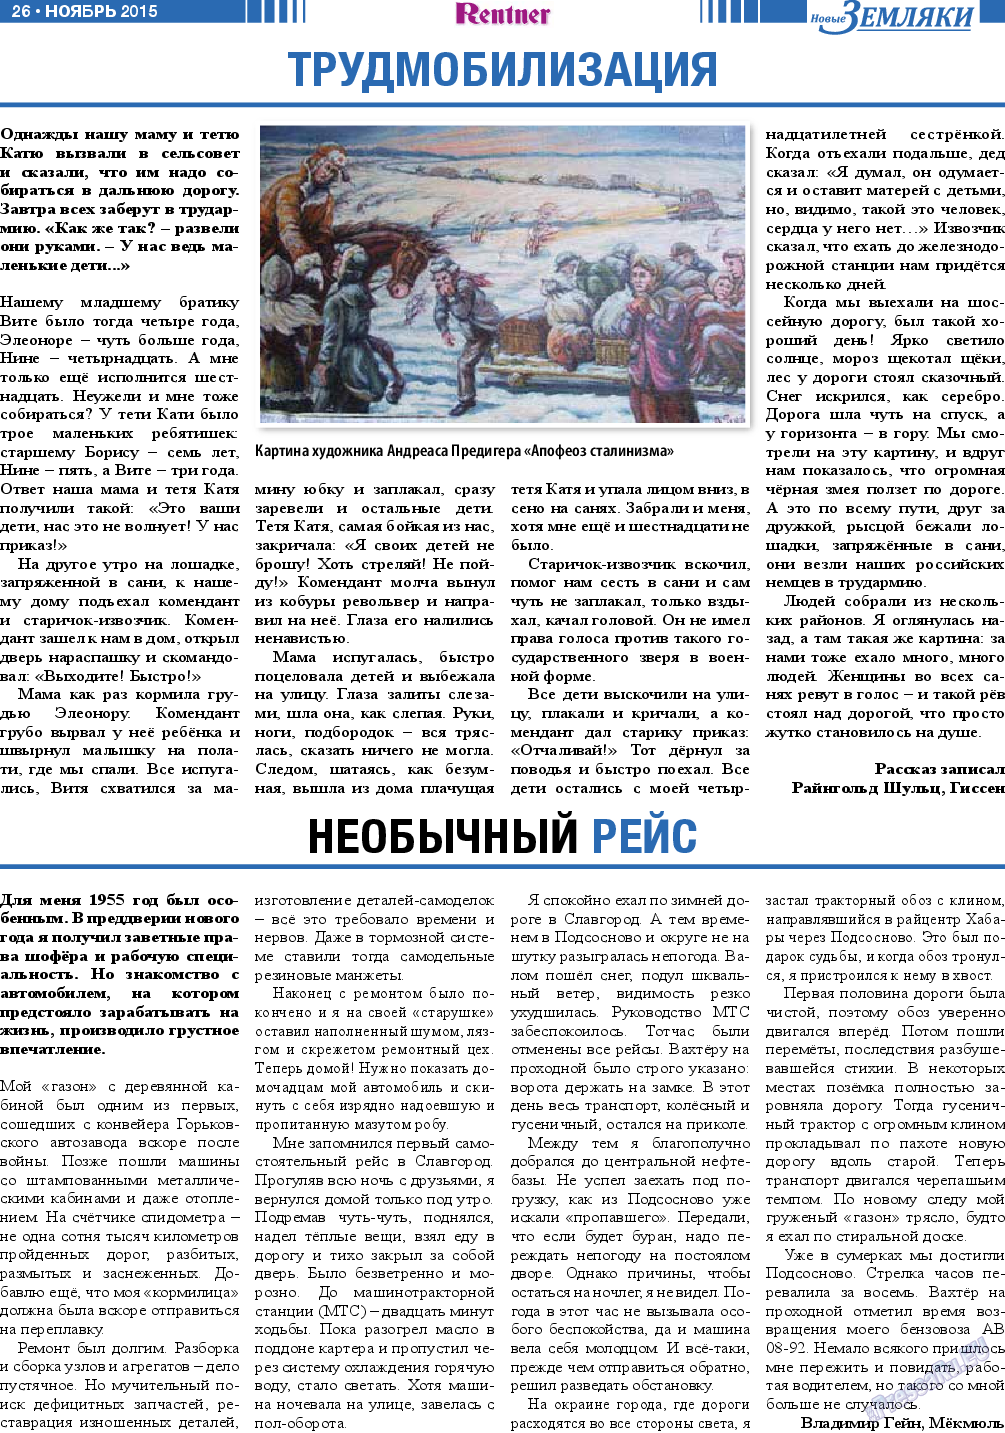 Новые Земляки, газета. 2015 №11 стр.26